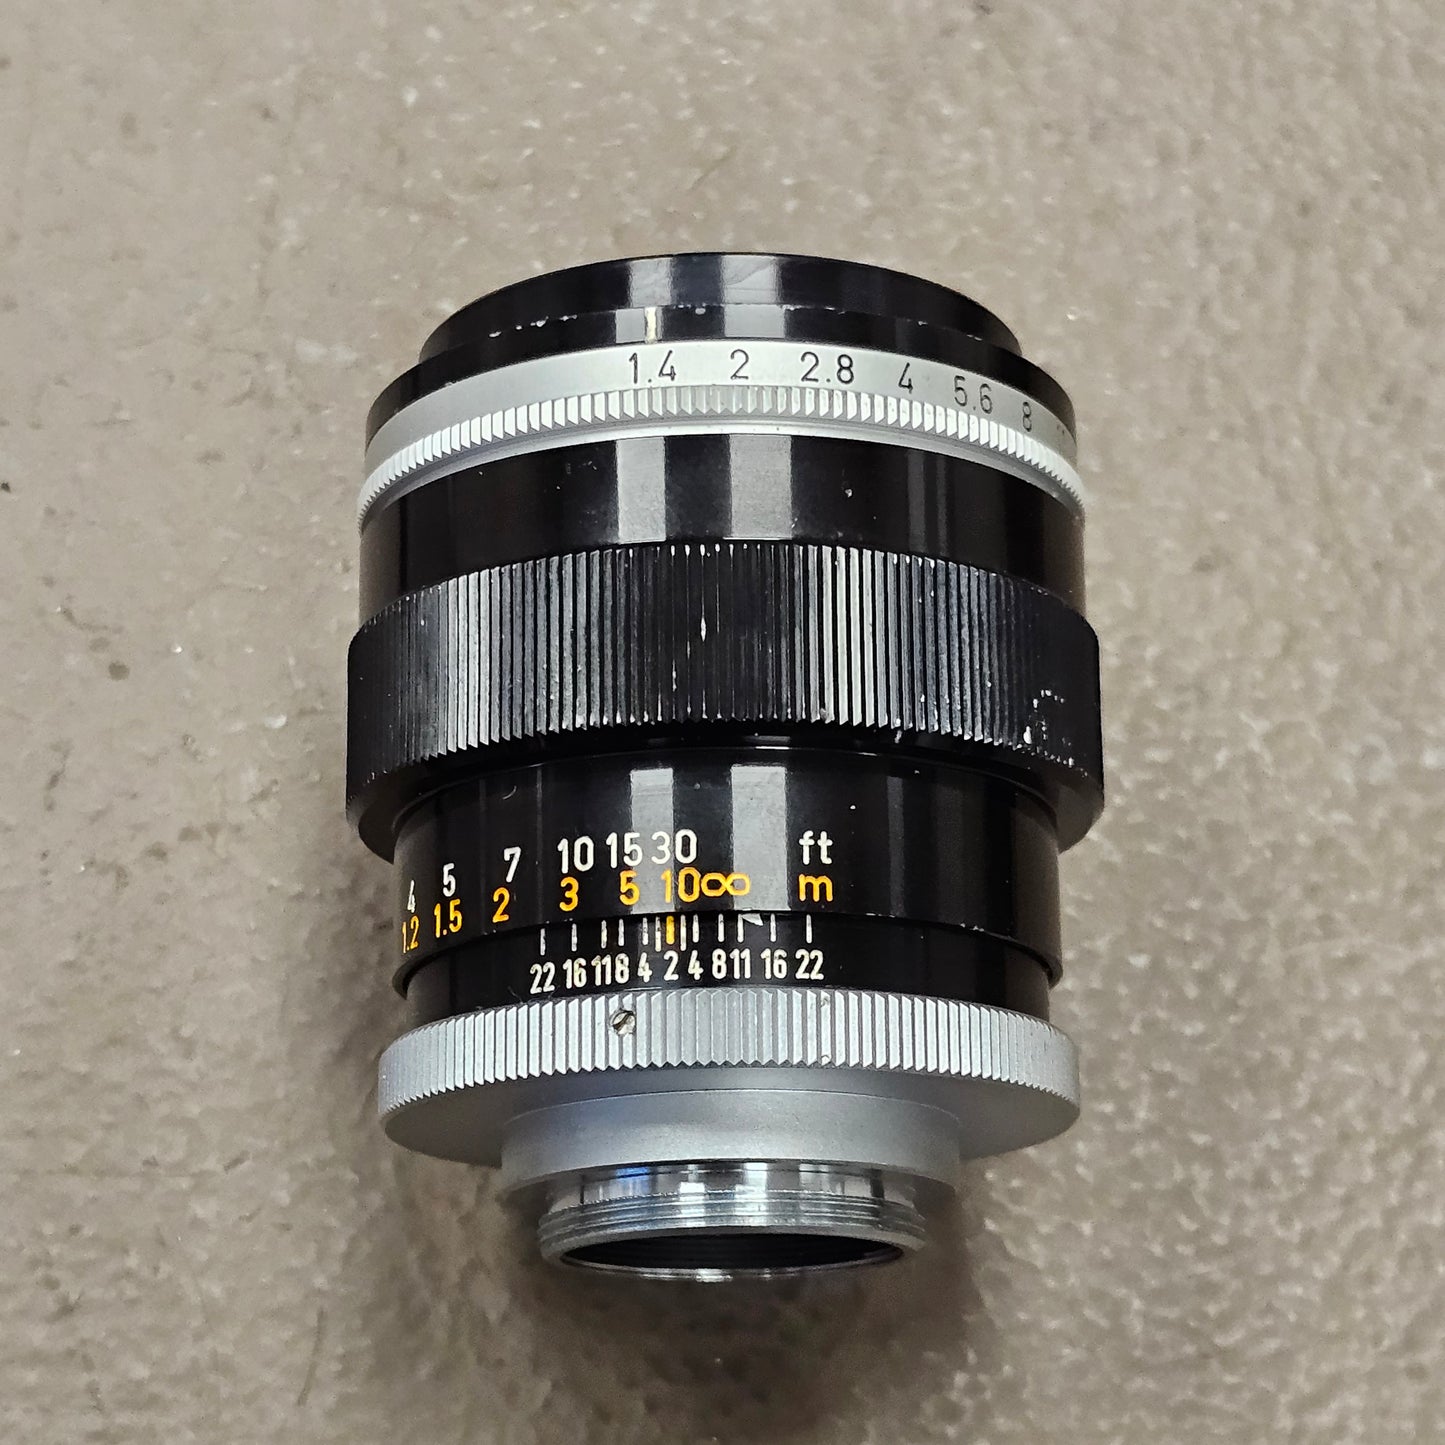 Canon TV-16 50mm T1.4 C-Mount Lens S# 65100